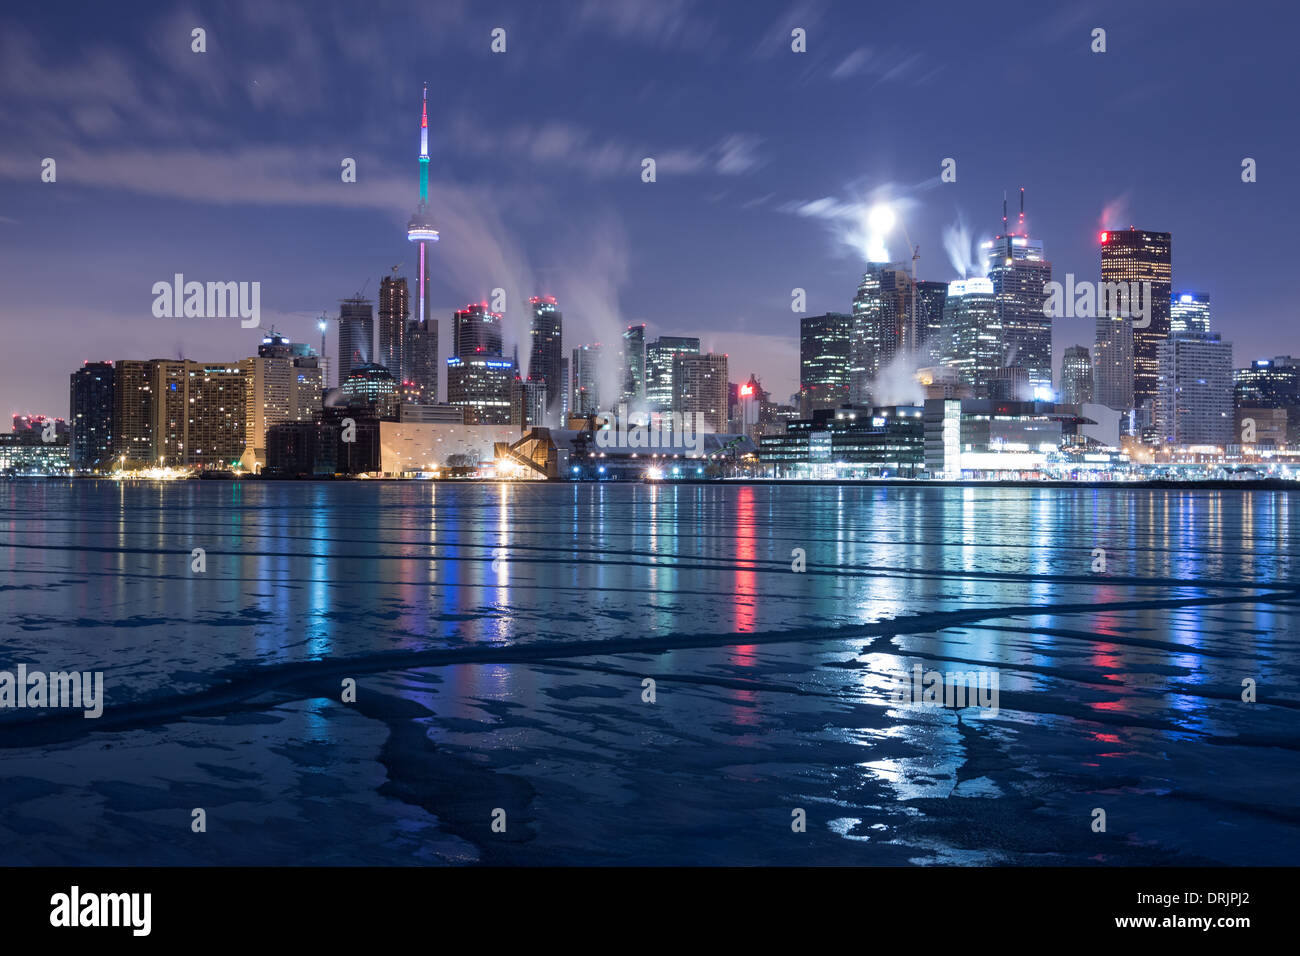 La ville de Toronto donne sur les eaux gelées du lac Ontario au cours d'un hiver exceptionnellement précoce de froid Banque D'Images